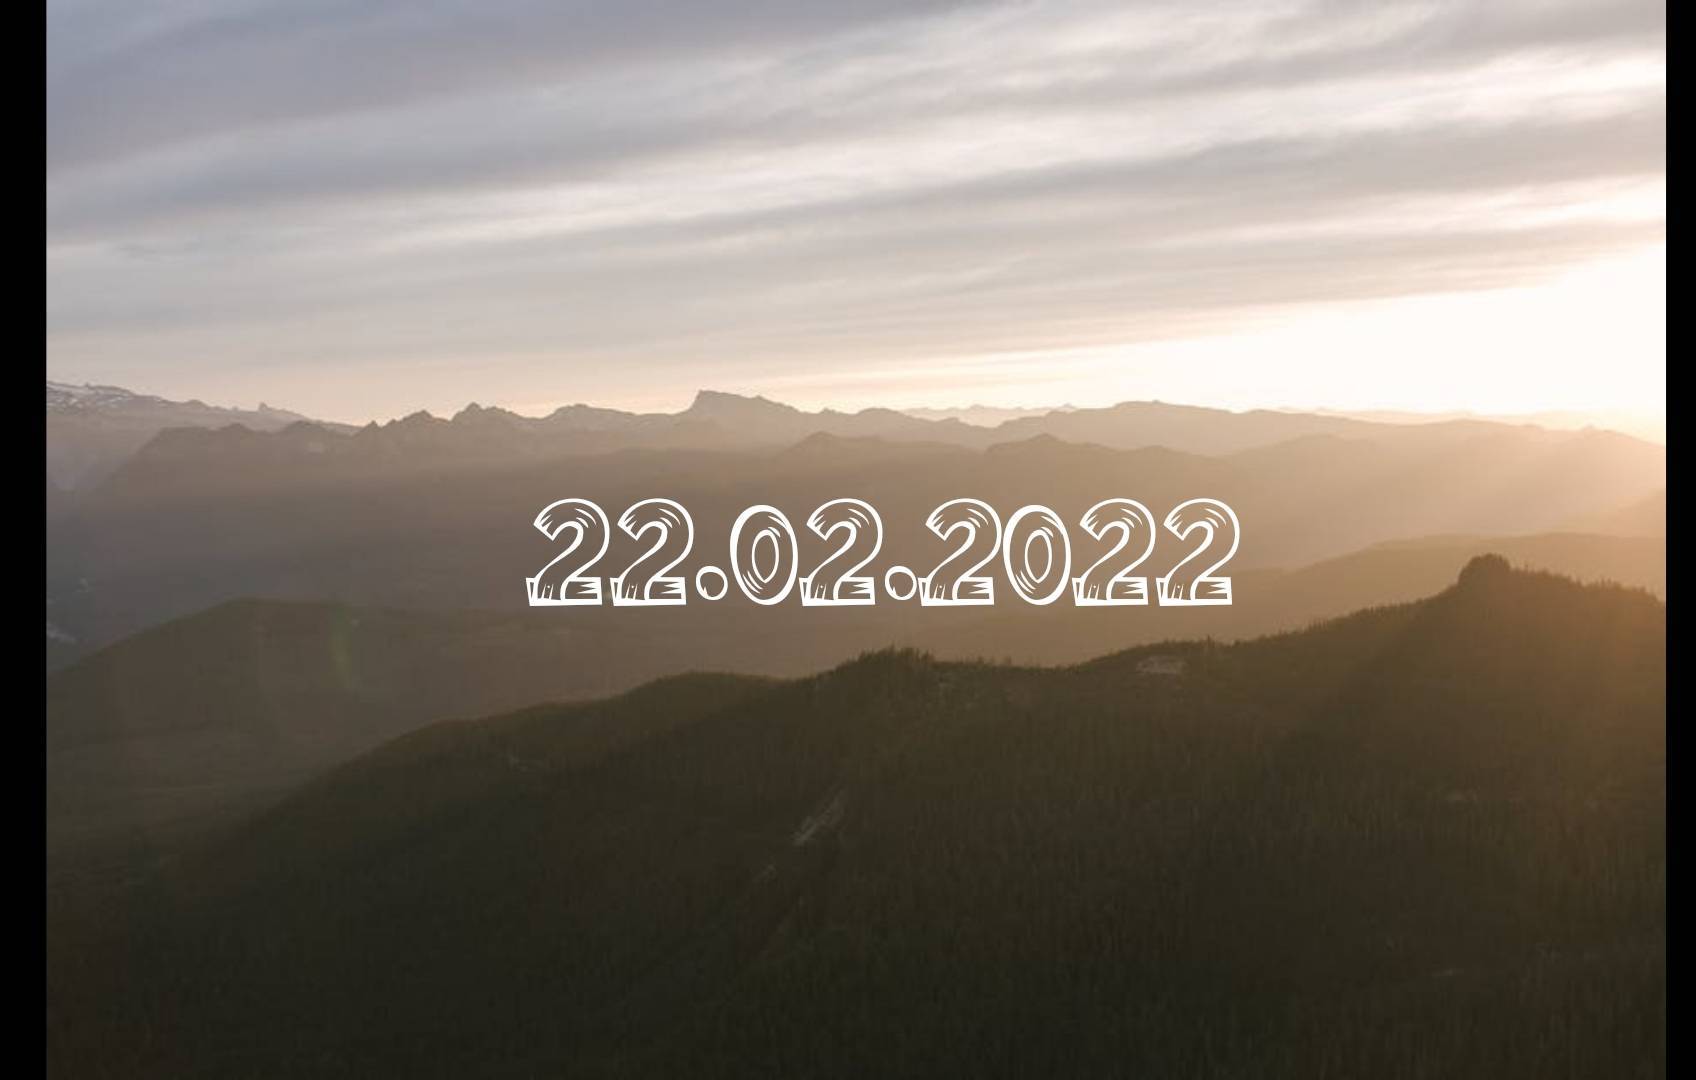 22.02.2022 – zi palindrom. Ce semnifică acest lucru